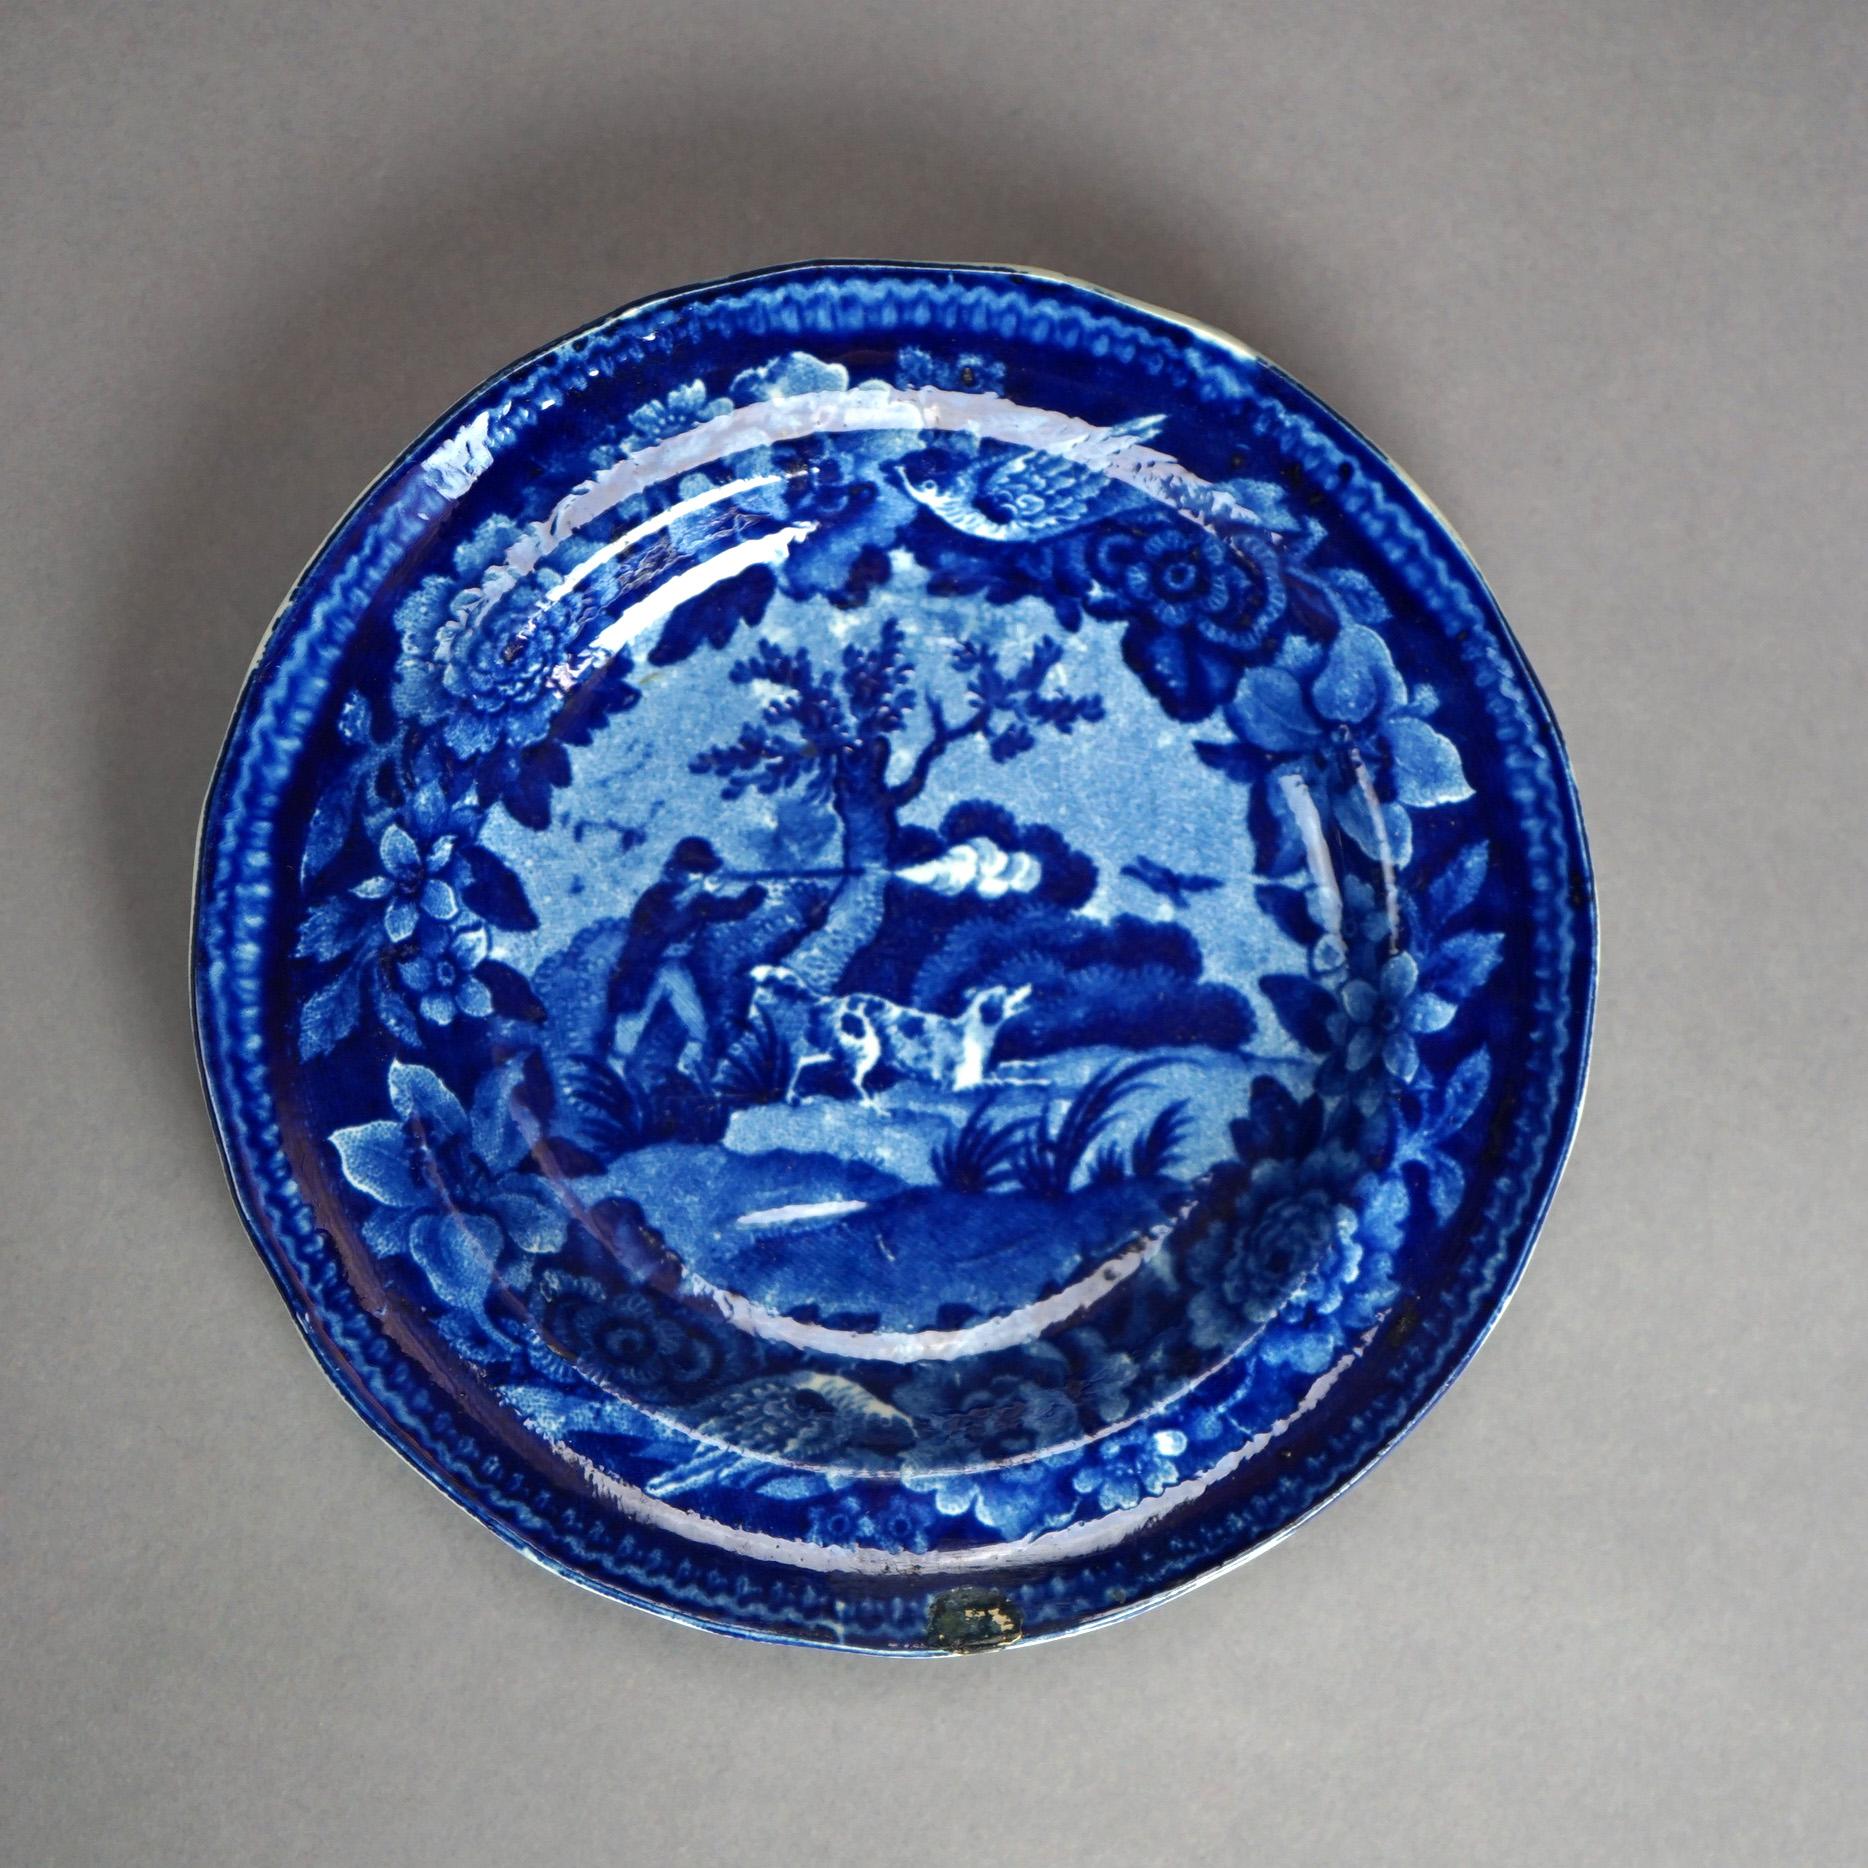 Five Antique Staffordshire Pottery Flow Blue Plates with Hunt Scènes 19th C 12